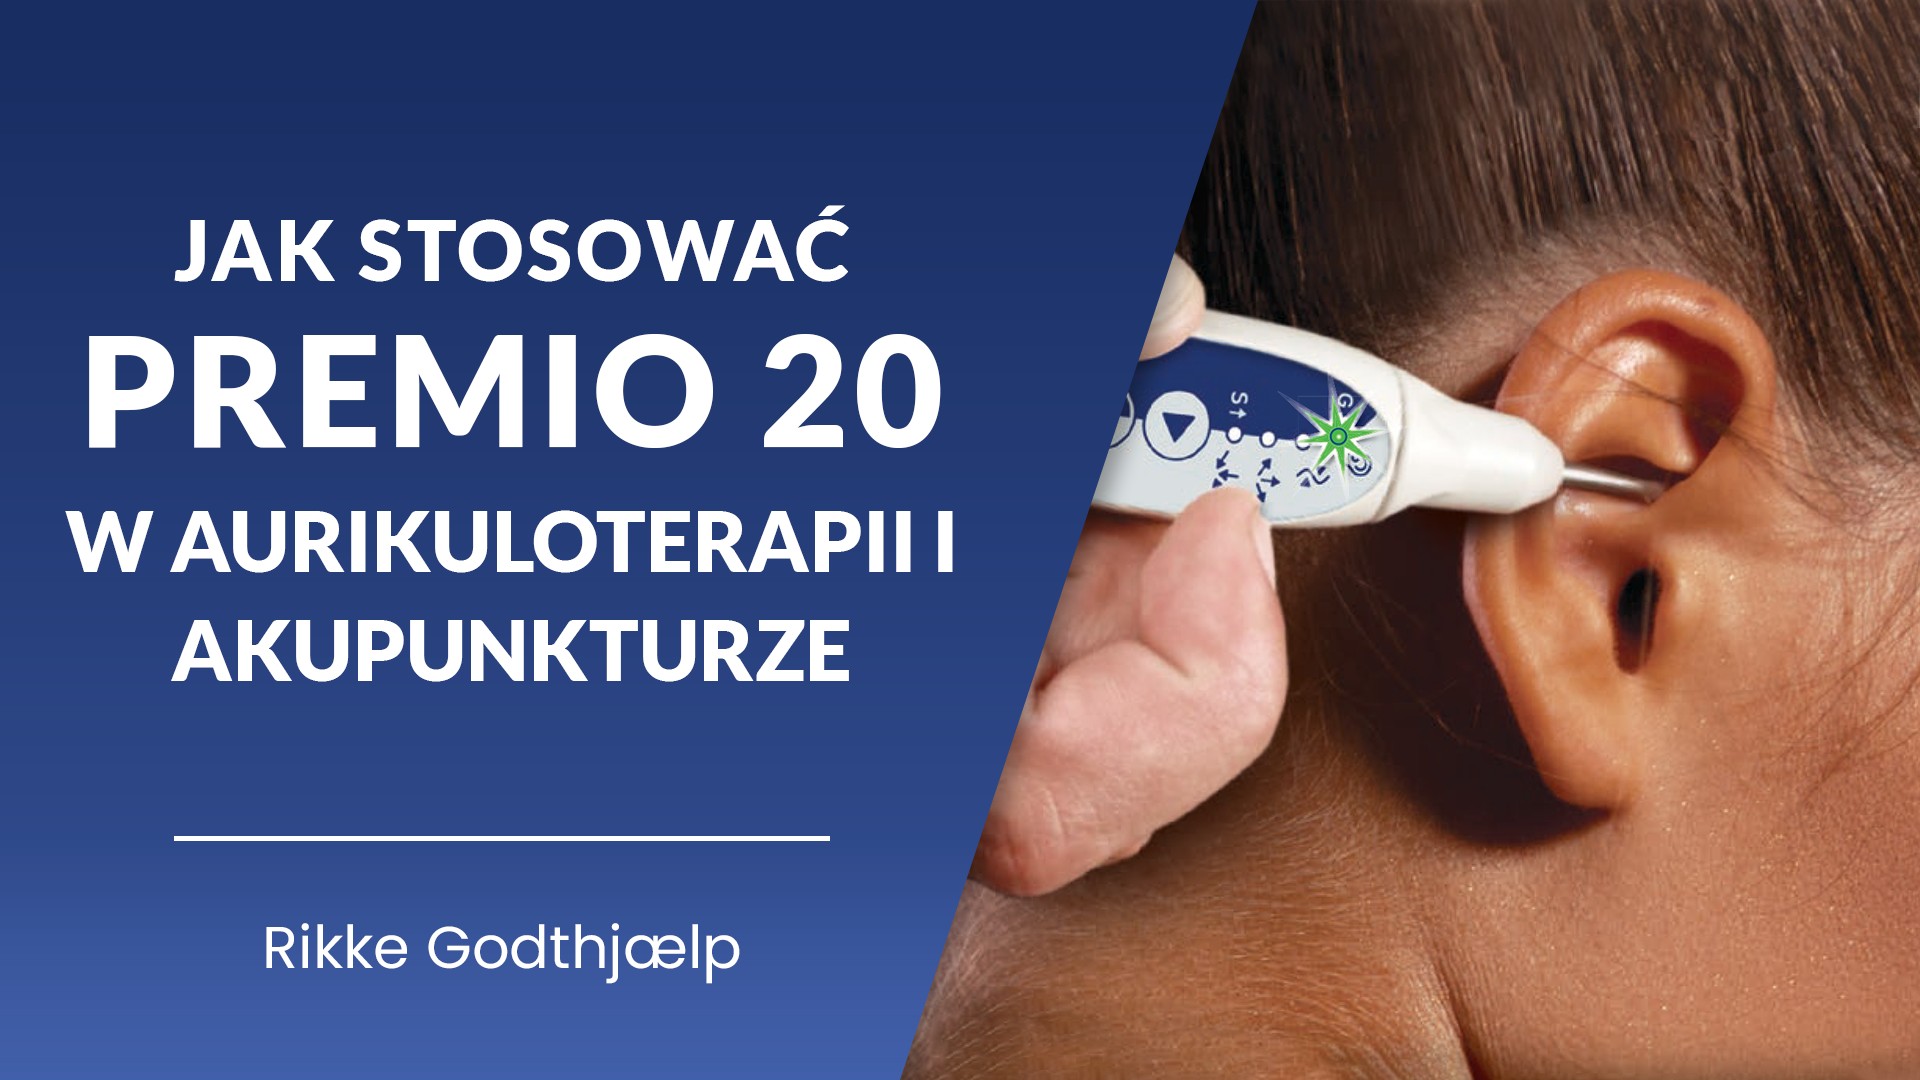 Jak stosować Premio 20 w aurikuloterapii i akupunkturze?